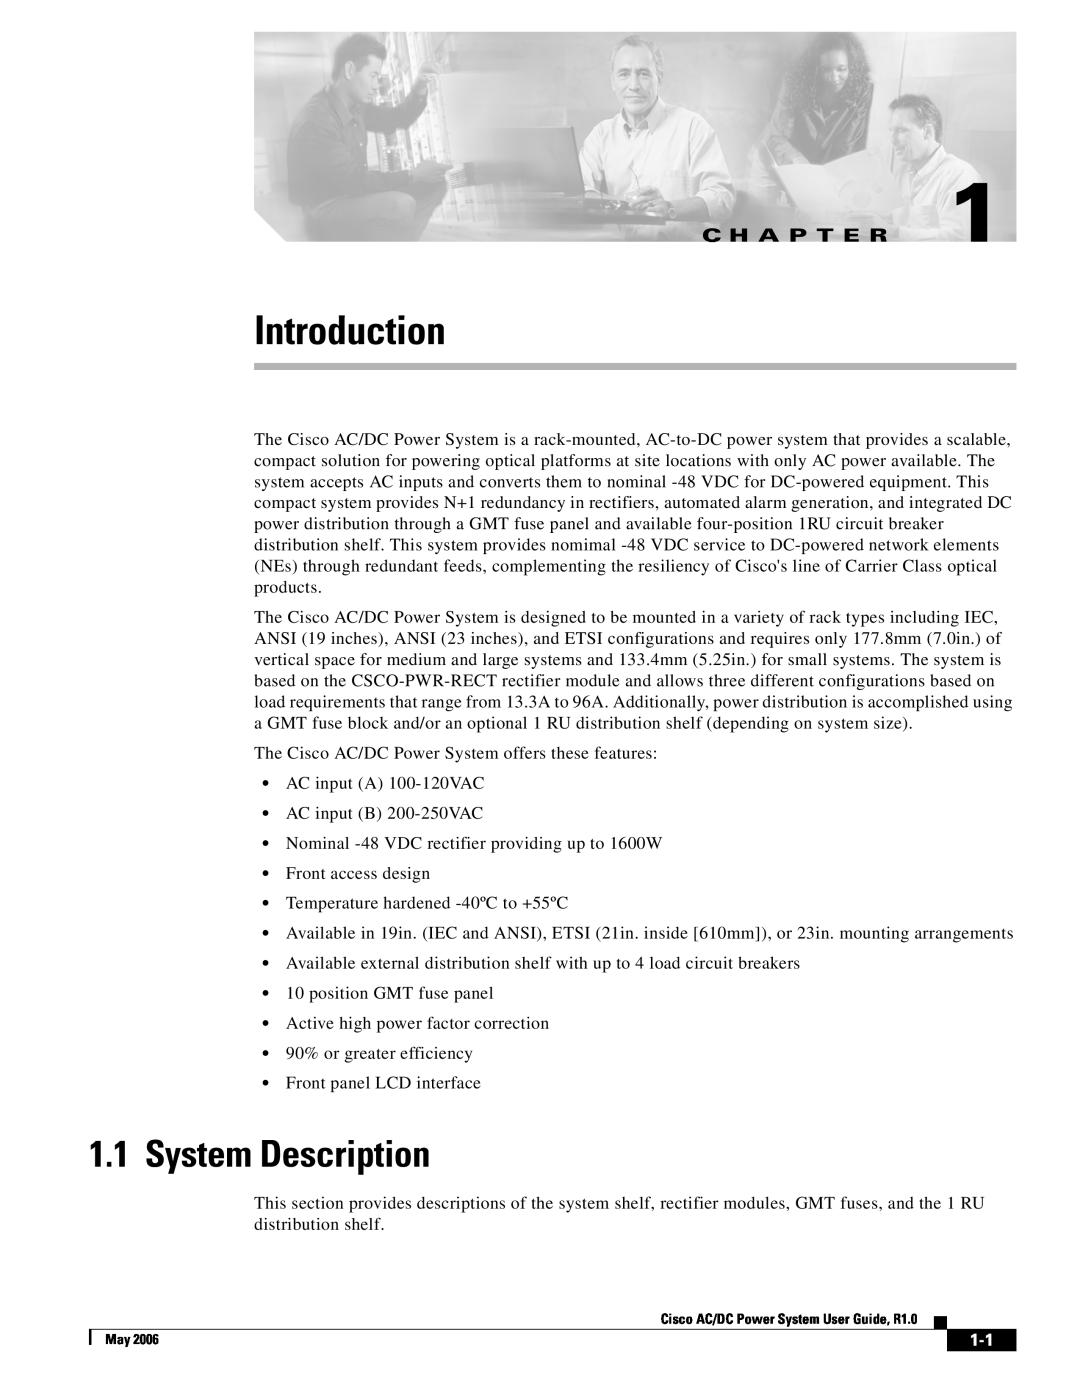 Cisco Systems 159330, 124792, 124778 manual Introduction, System Description, C H A P T E R 